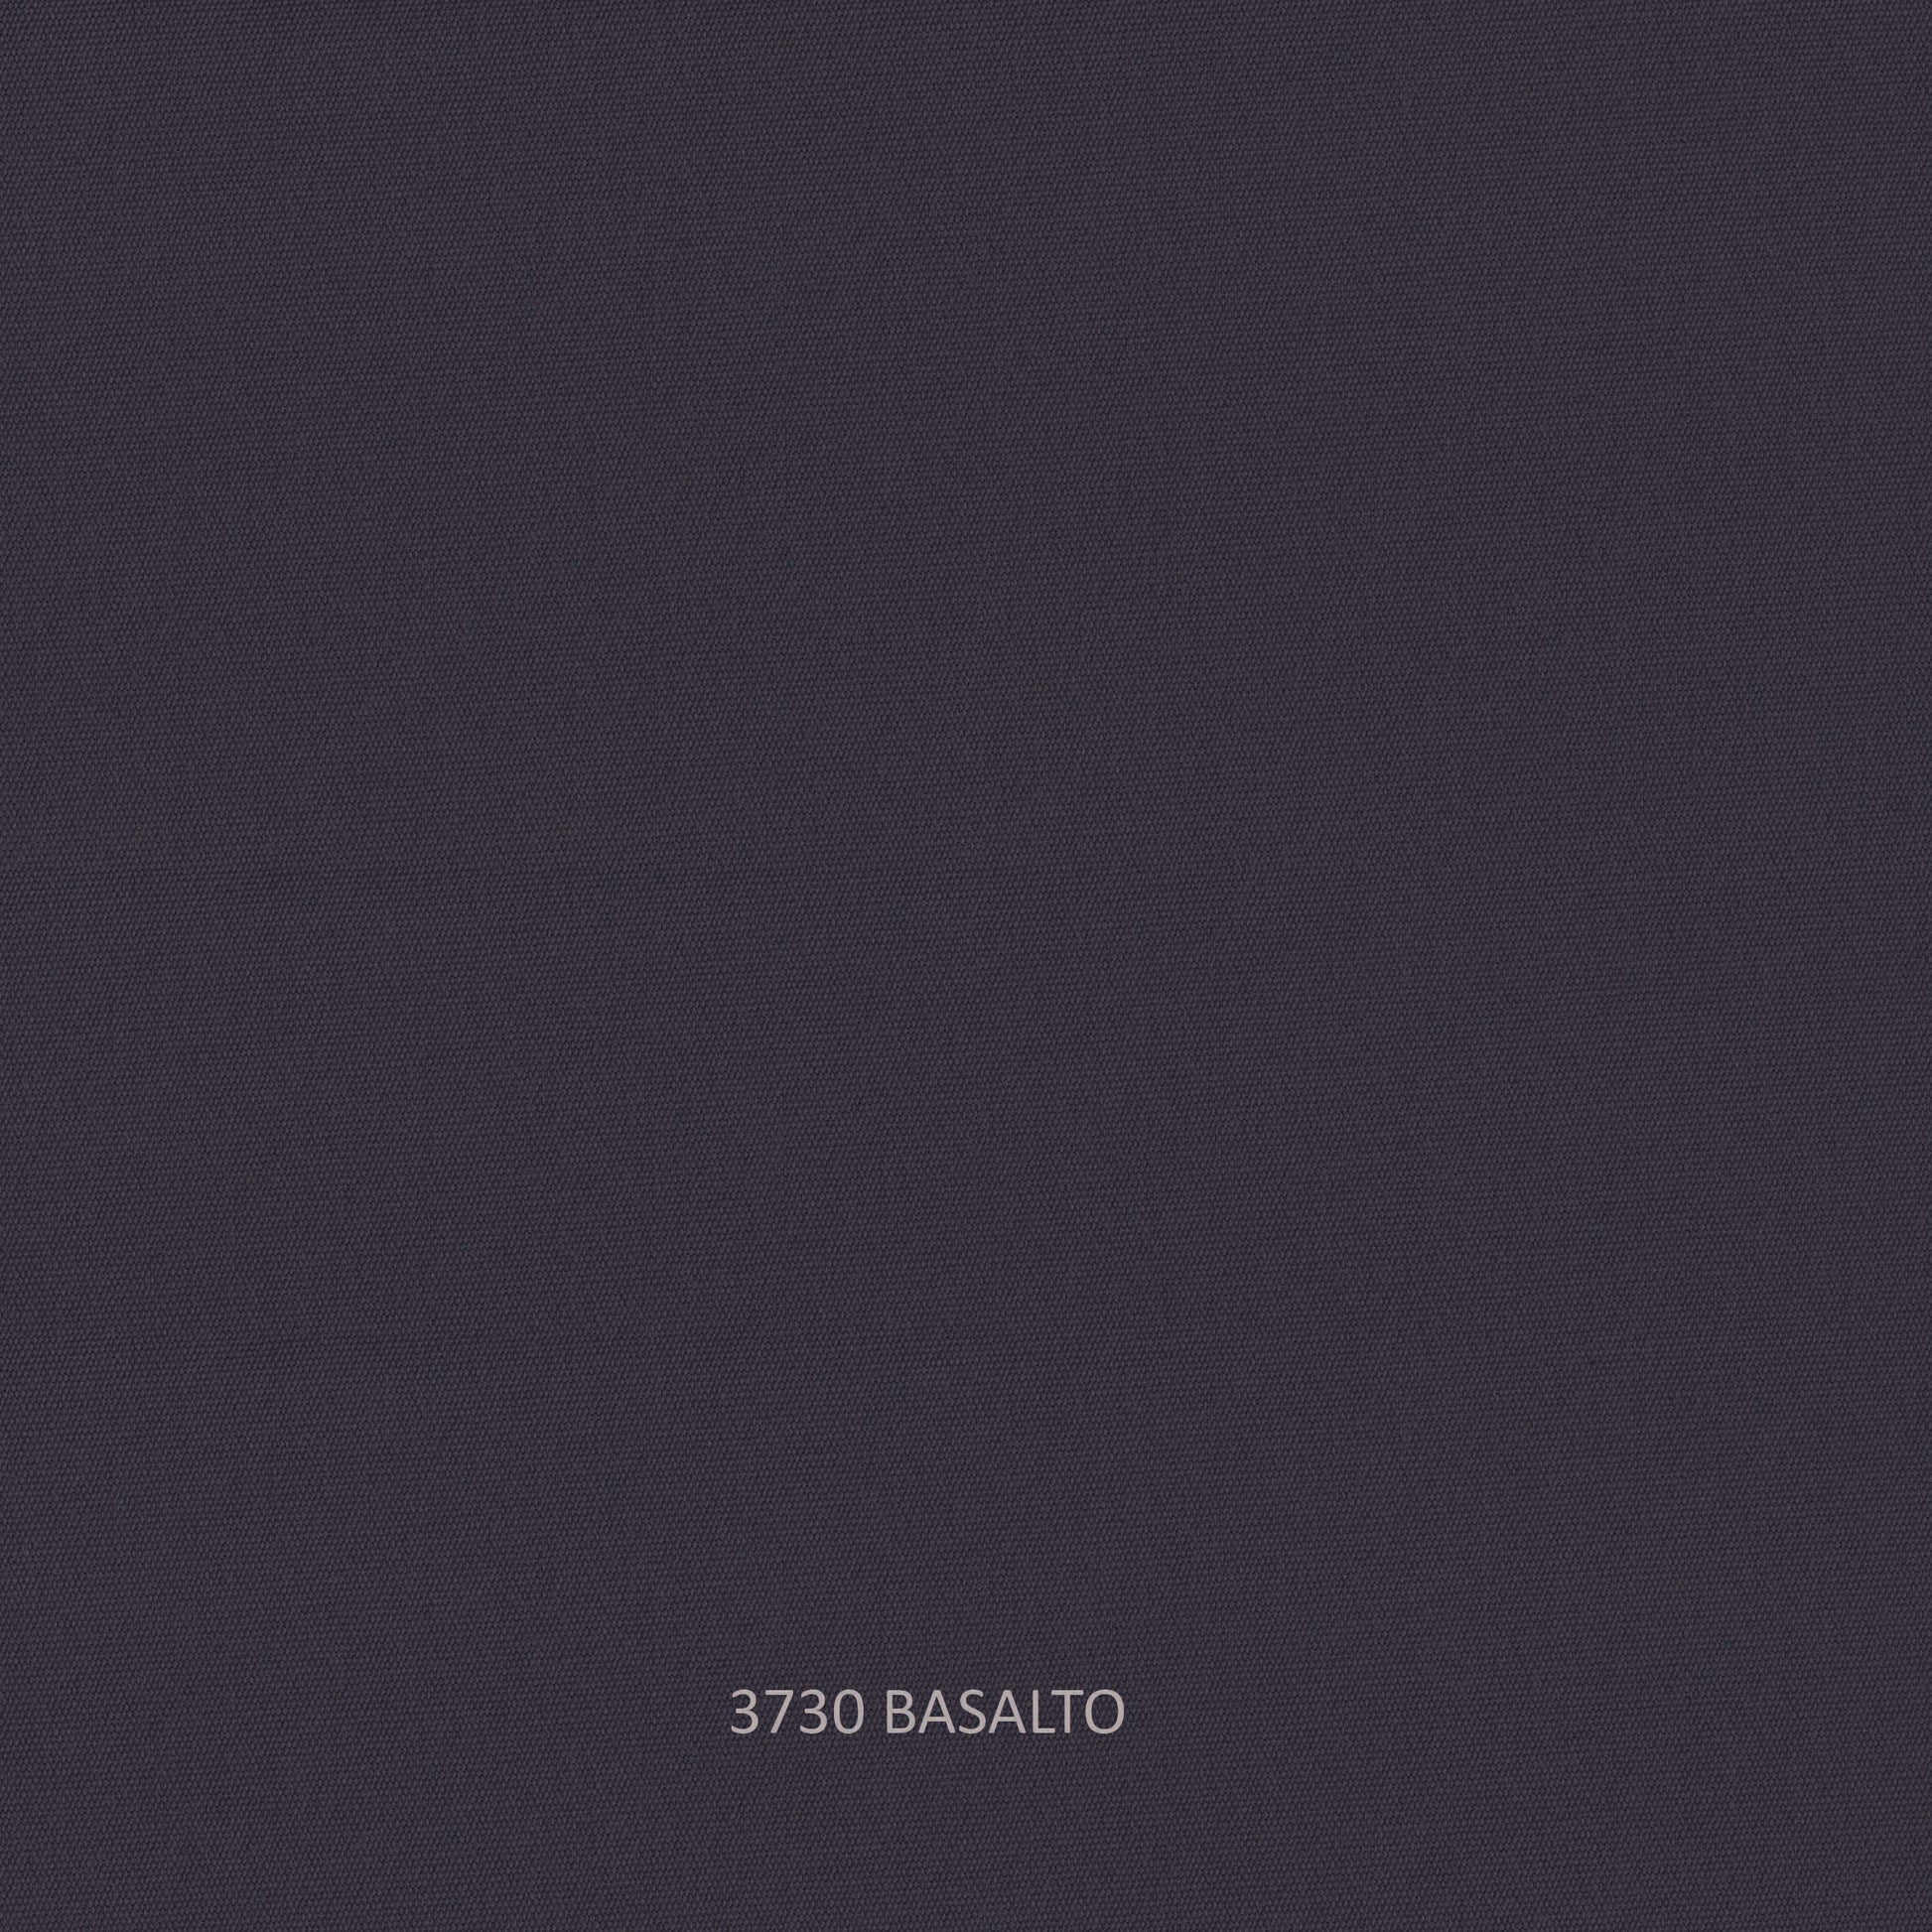 Milano Love Seat - PadioLiving - Milano Love Seat - Outdoor Love Seat - Dark Grey 21mm Strap - Basalto (£1715) - PadioLiving